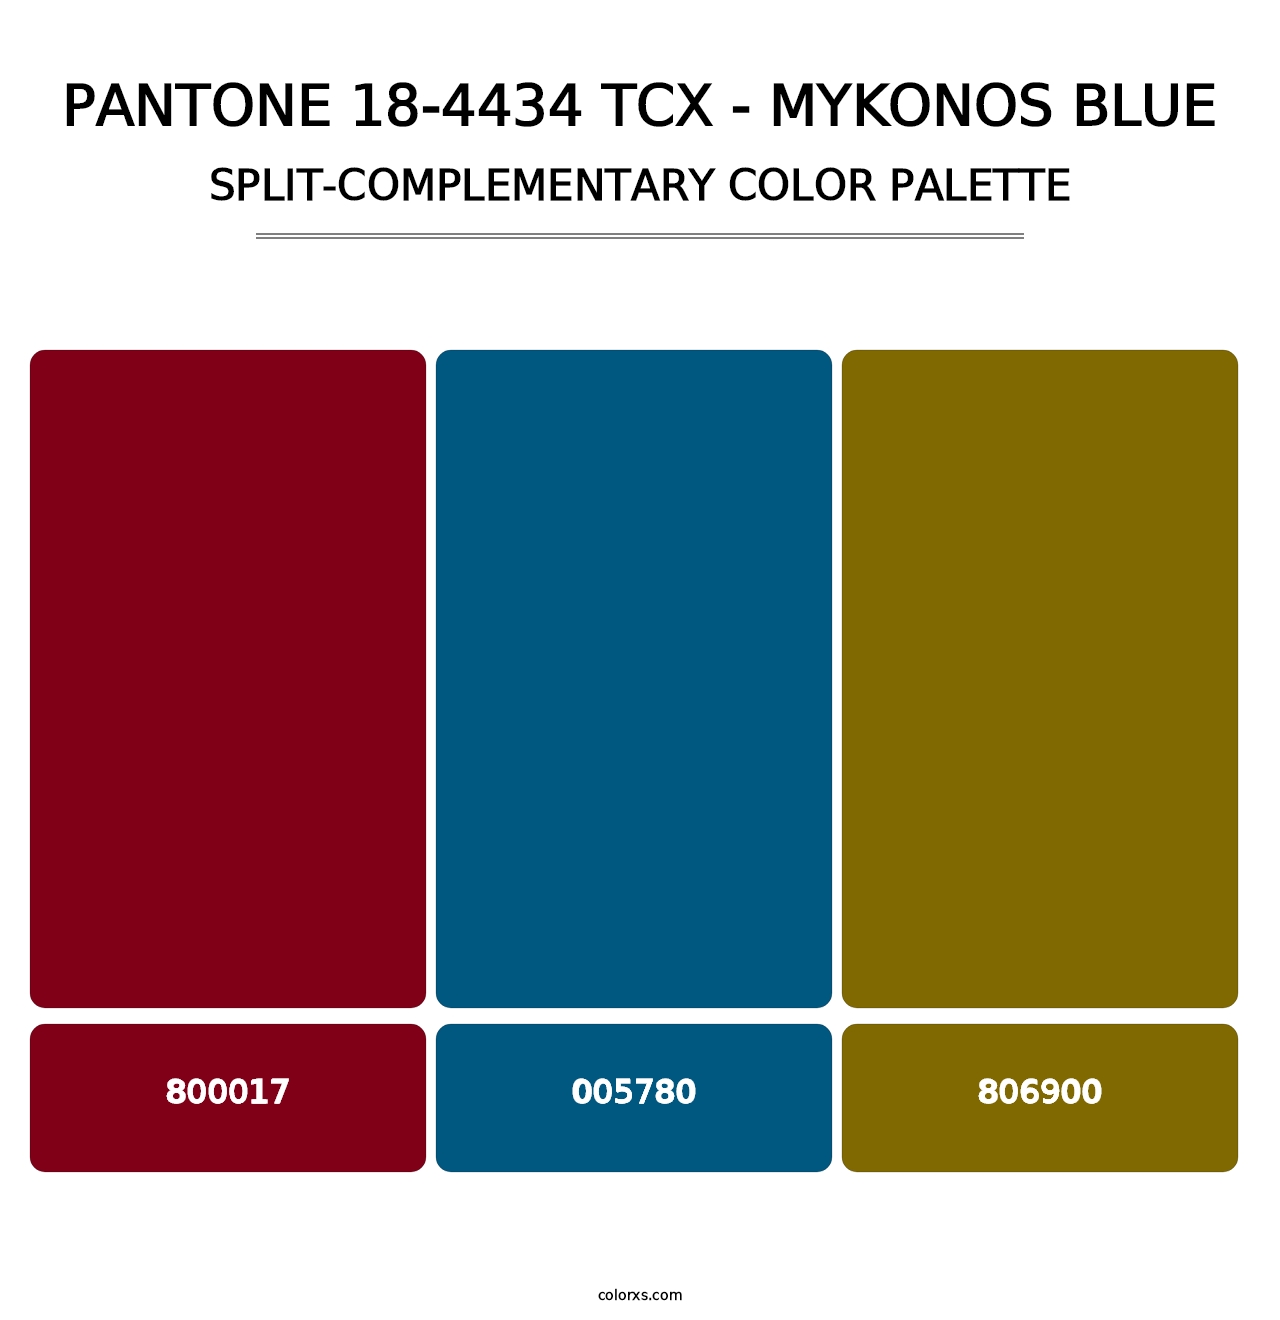 PANTONE 18-4434 TCX - Mykonos Blue - Split-Complementary Color Palette